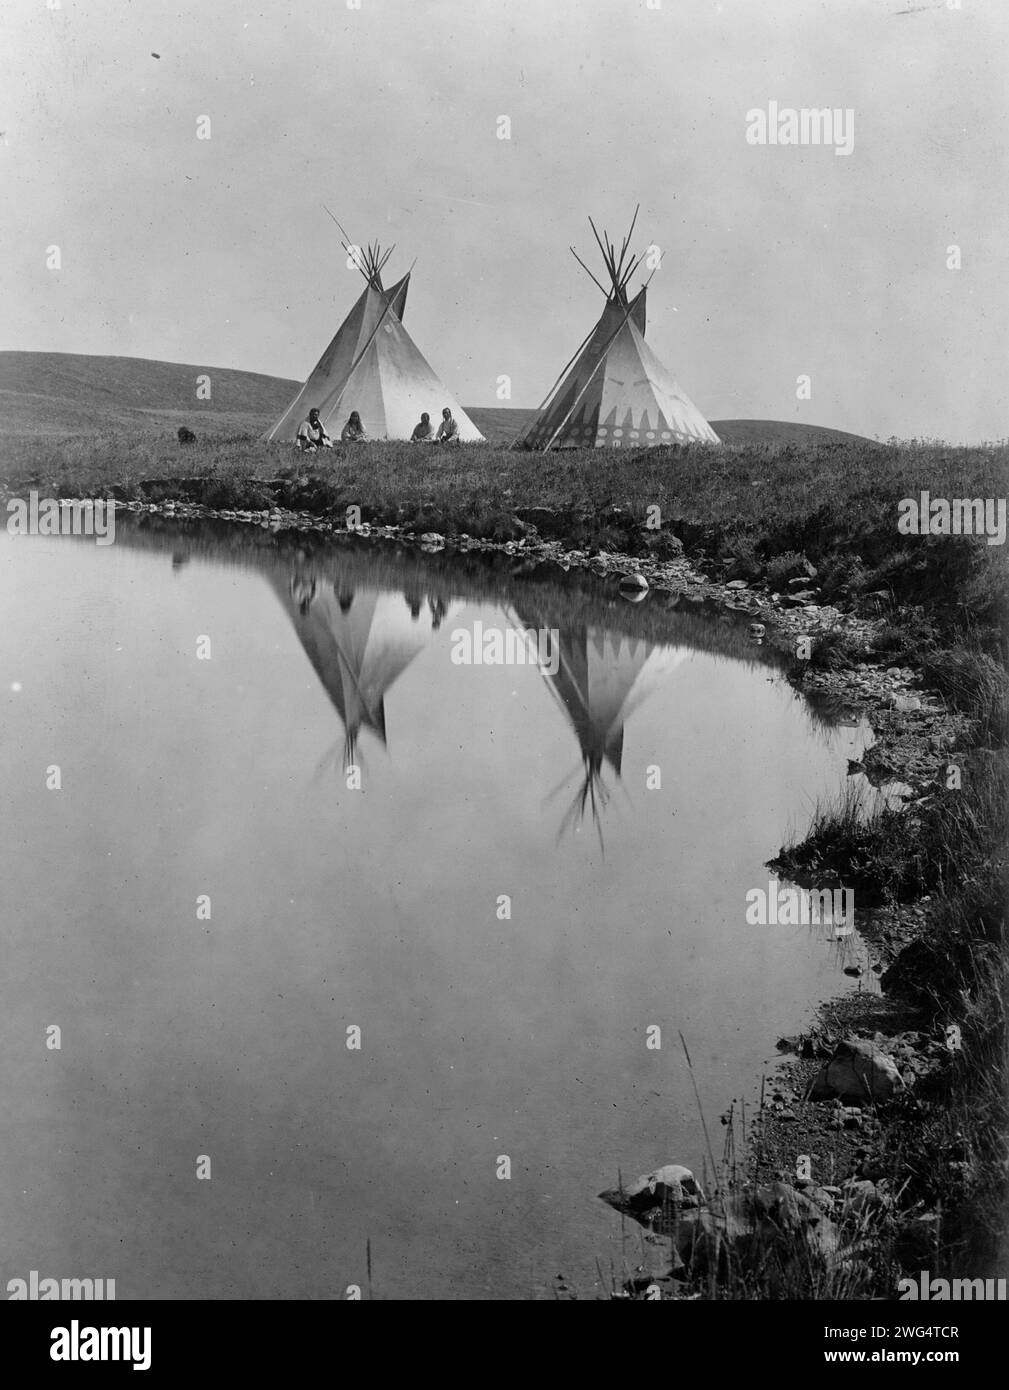 Am Wasserrand - Piegan, 1910. Das Foto zeigt zwei Tipis, die sich im Wasser des Teichs spiegeln, mit vier Piegan-Indianern, die vor einem Tipi sitzen. Stockfoto